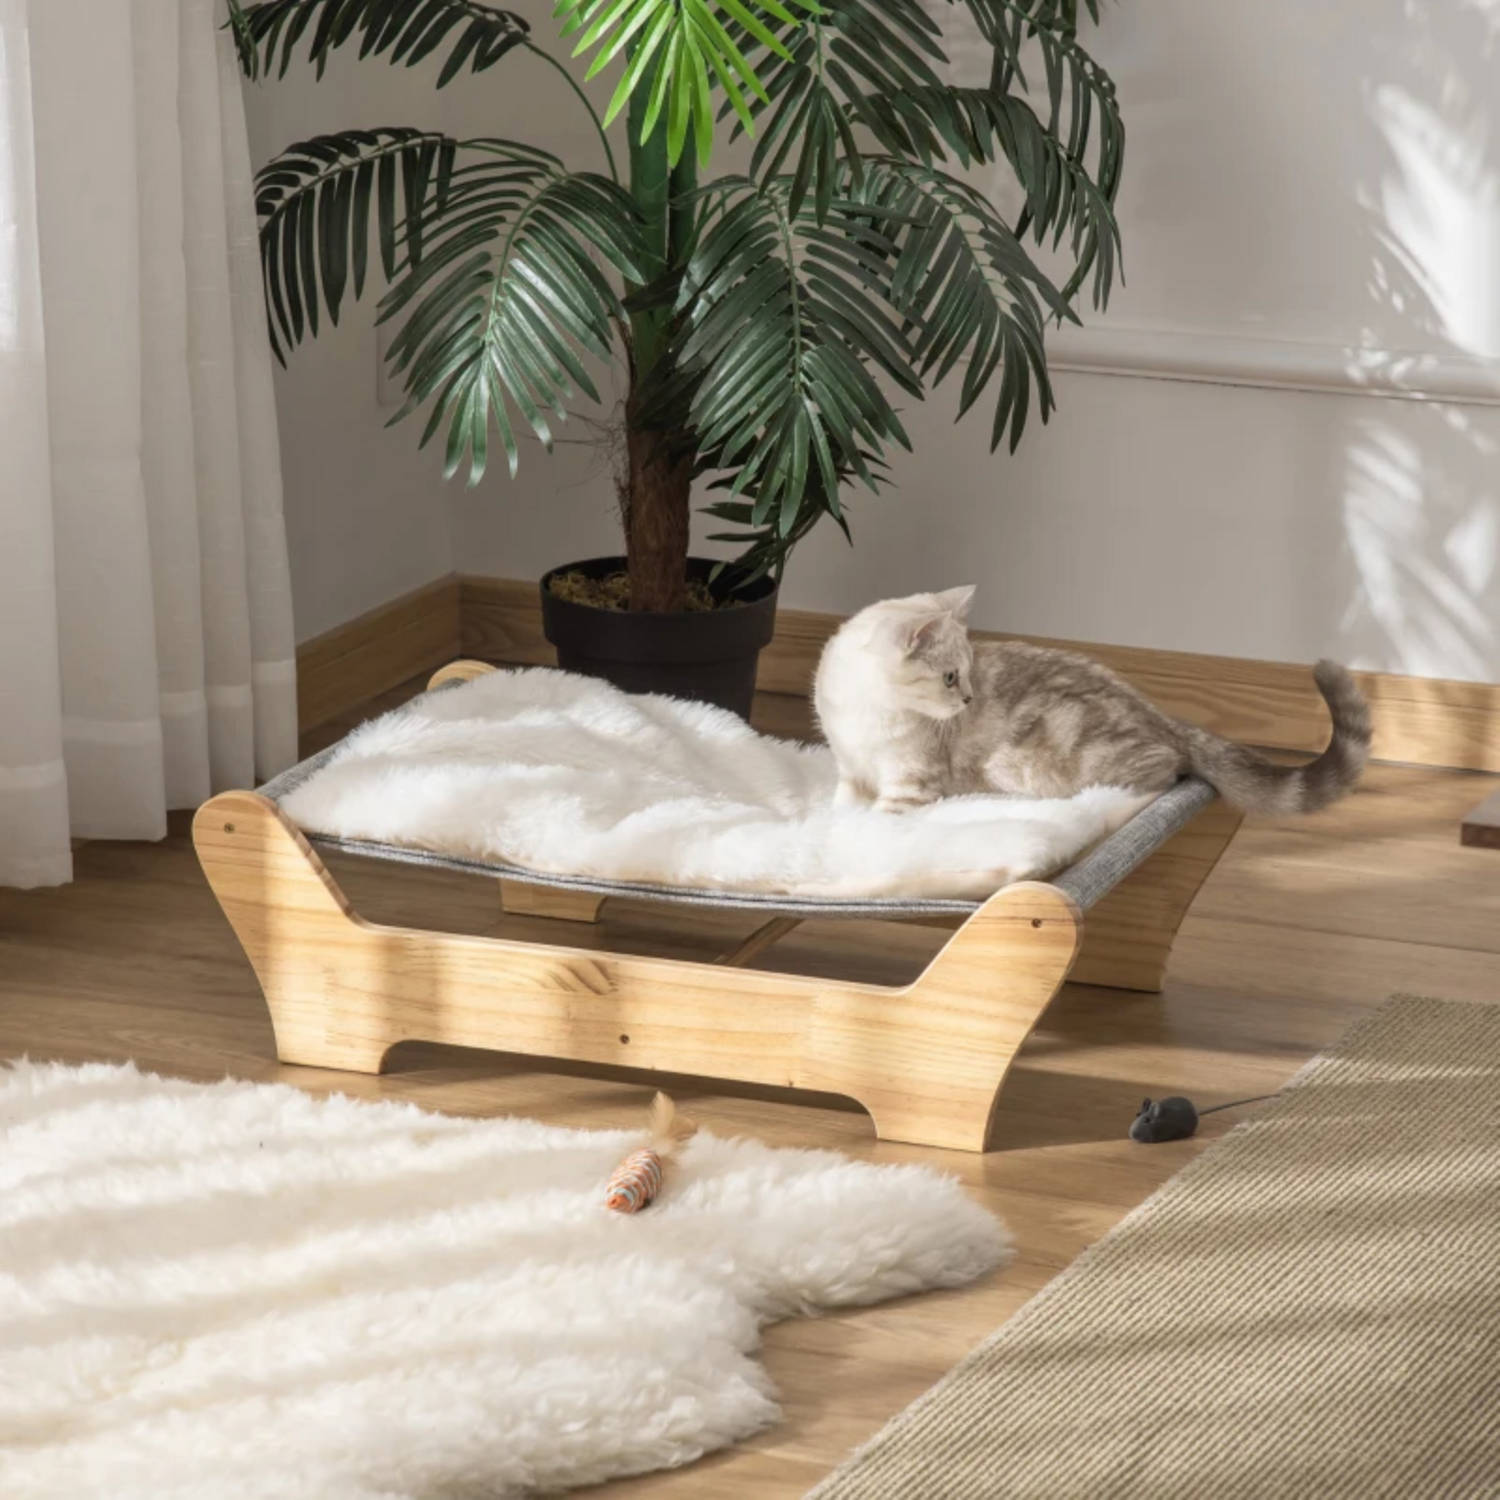 Verlammen Chronisch doneren Kattenmand - Kattenbed - Hangmat Kat - Grenen hout - 68 x 43 x 20 cm |  Blokker